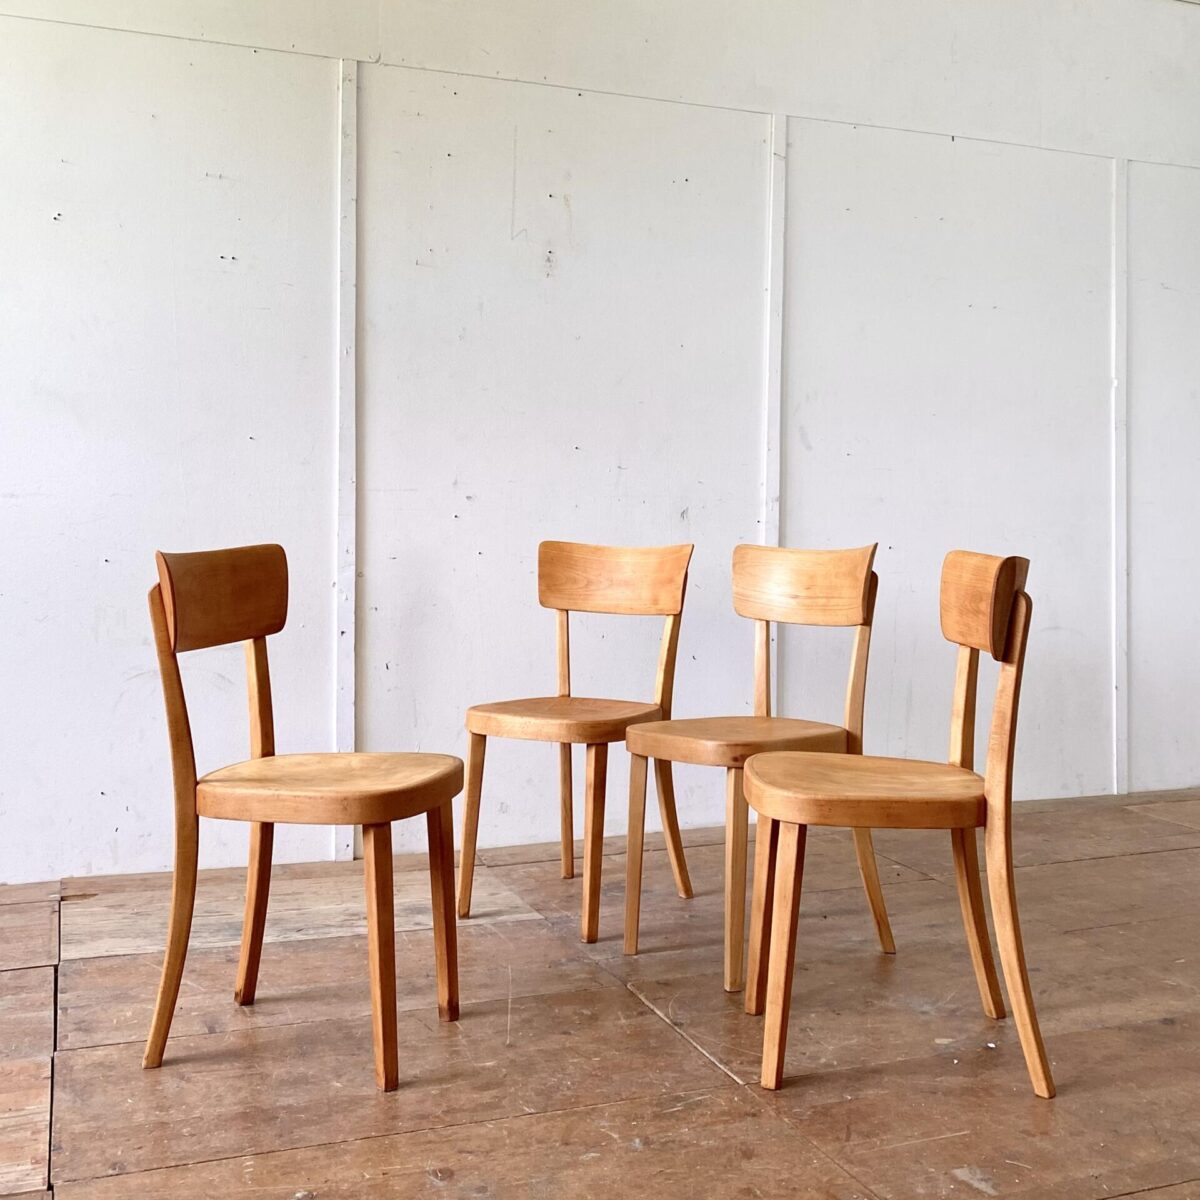 Deuxieme.shop horgenglarus Classic Stühle. 4er Set Beizenstühle mit Alterspatina geschliffen und geölt. Technisch in stabilem Zustand, warm-matte Ausstrahlung. Ein grösseres Set ist nach Absprache verfügbar. 